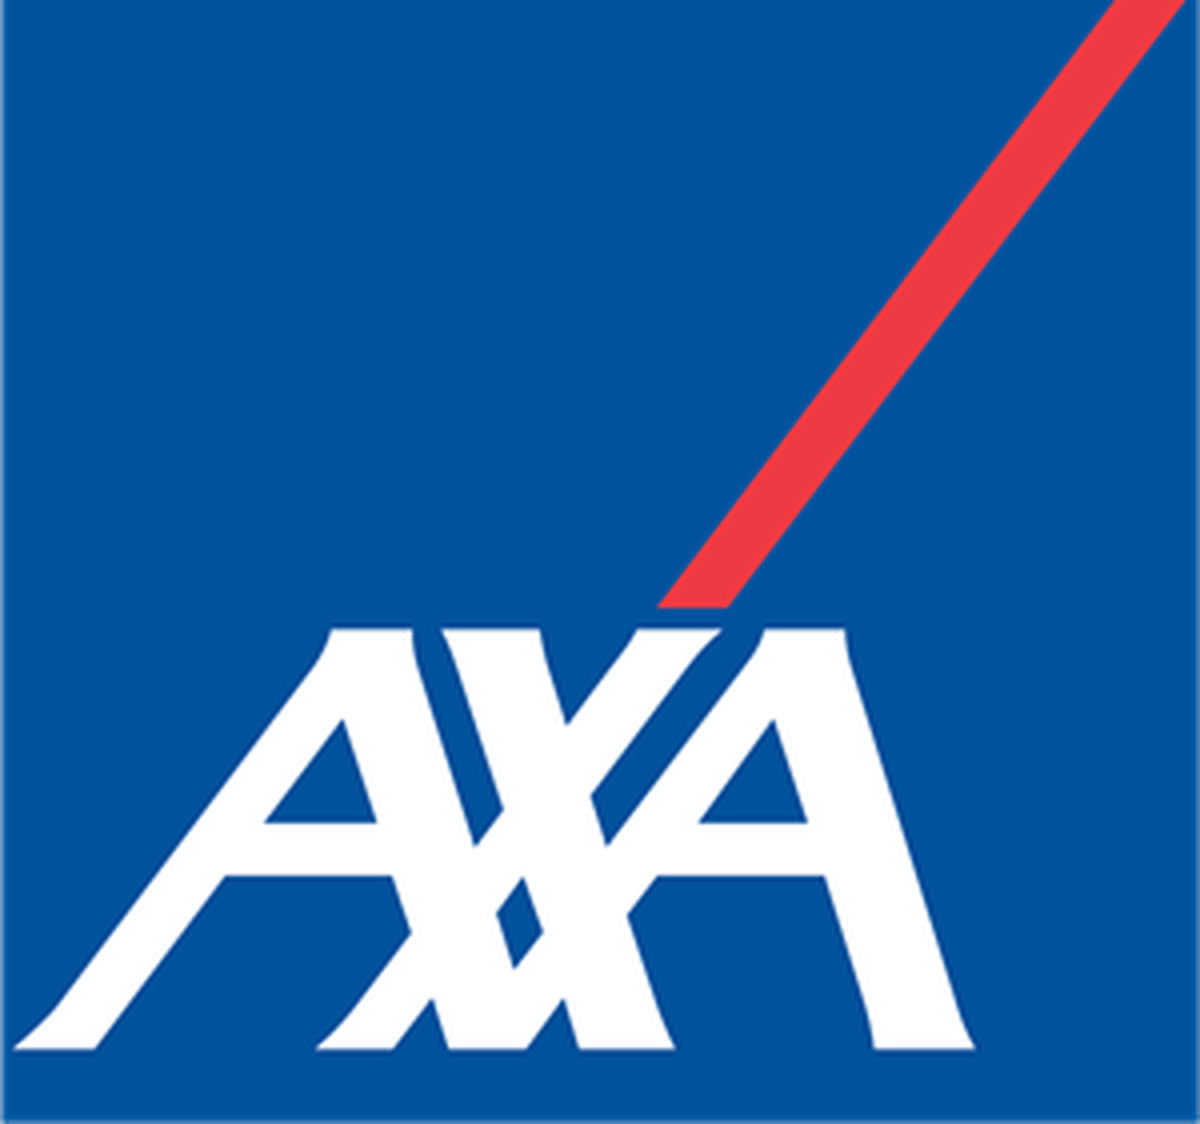 AXA Business Development and Sales Associate at AXA Singapore